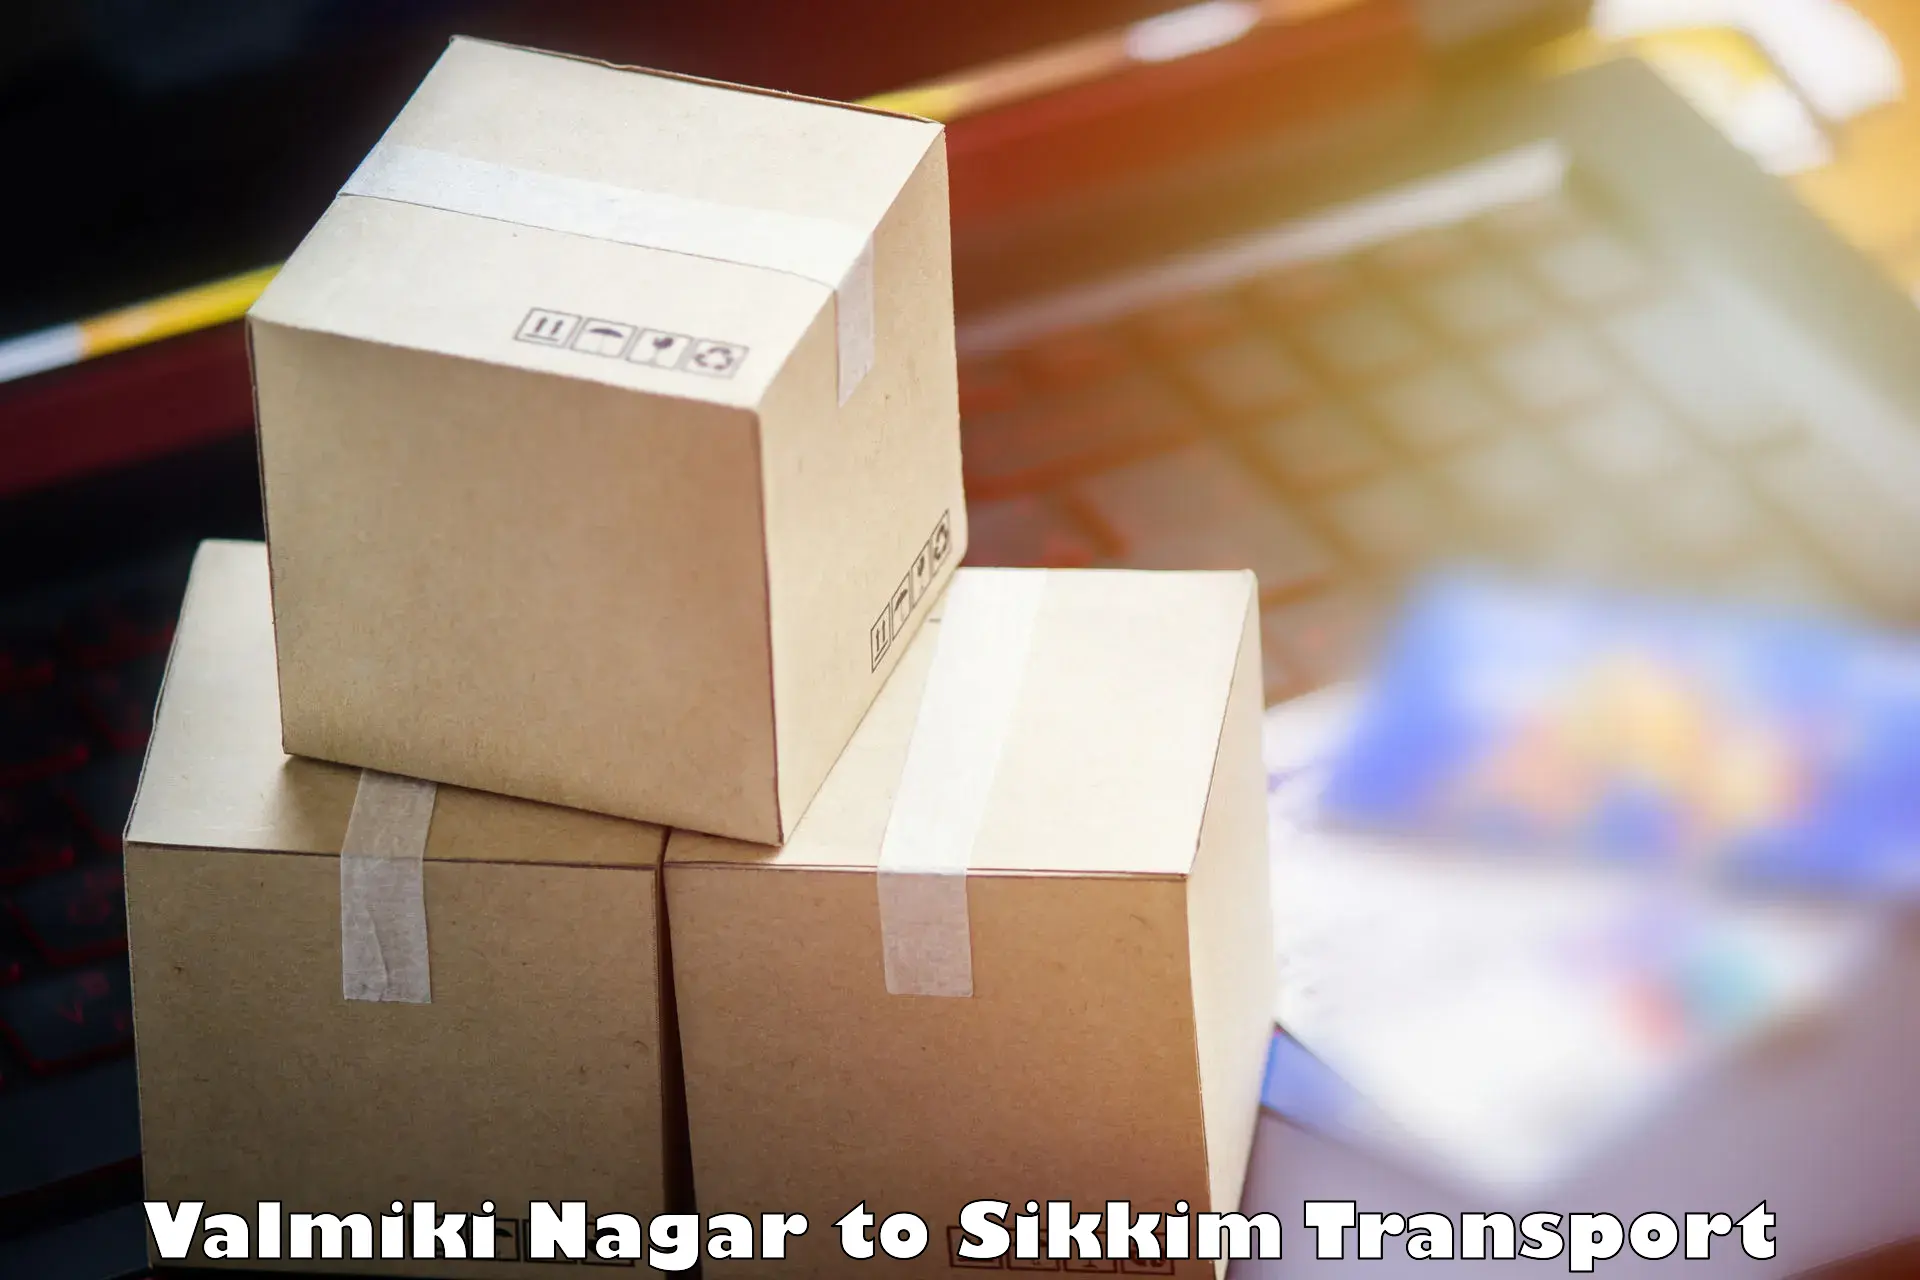 Nearest transport service Valmiki Nagar to North Sikkim